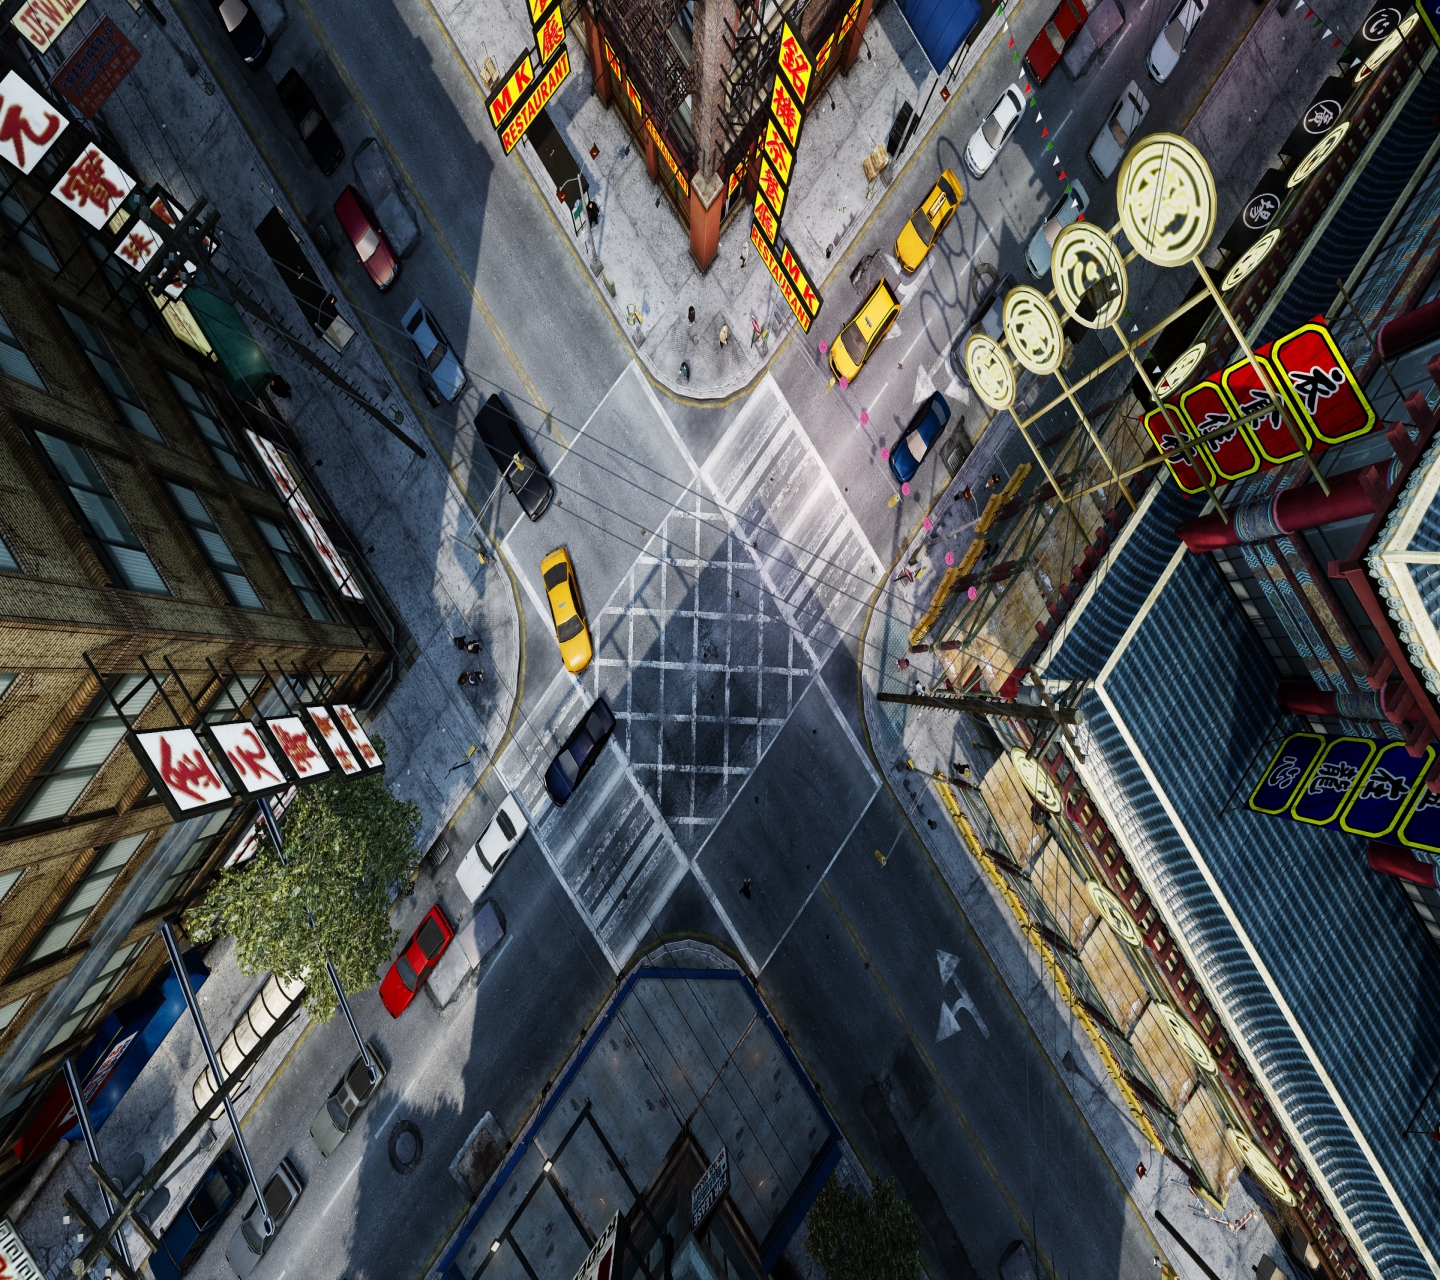 Descarga gratuita de fondo de pantalla para móvil de Videojuego, Grand Theft Auto Iv, Grand Theft Auto.